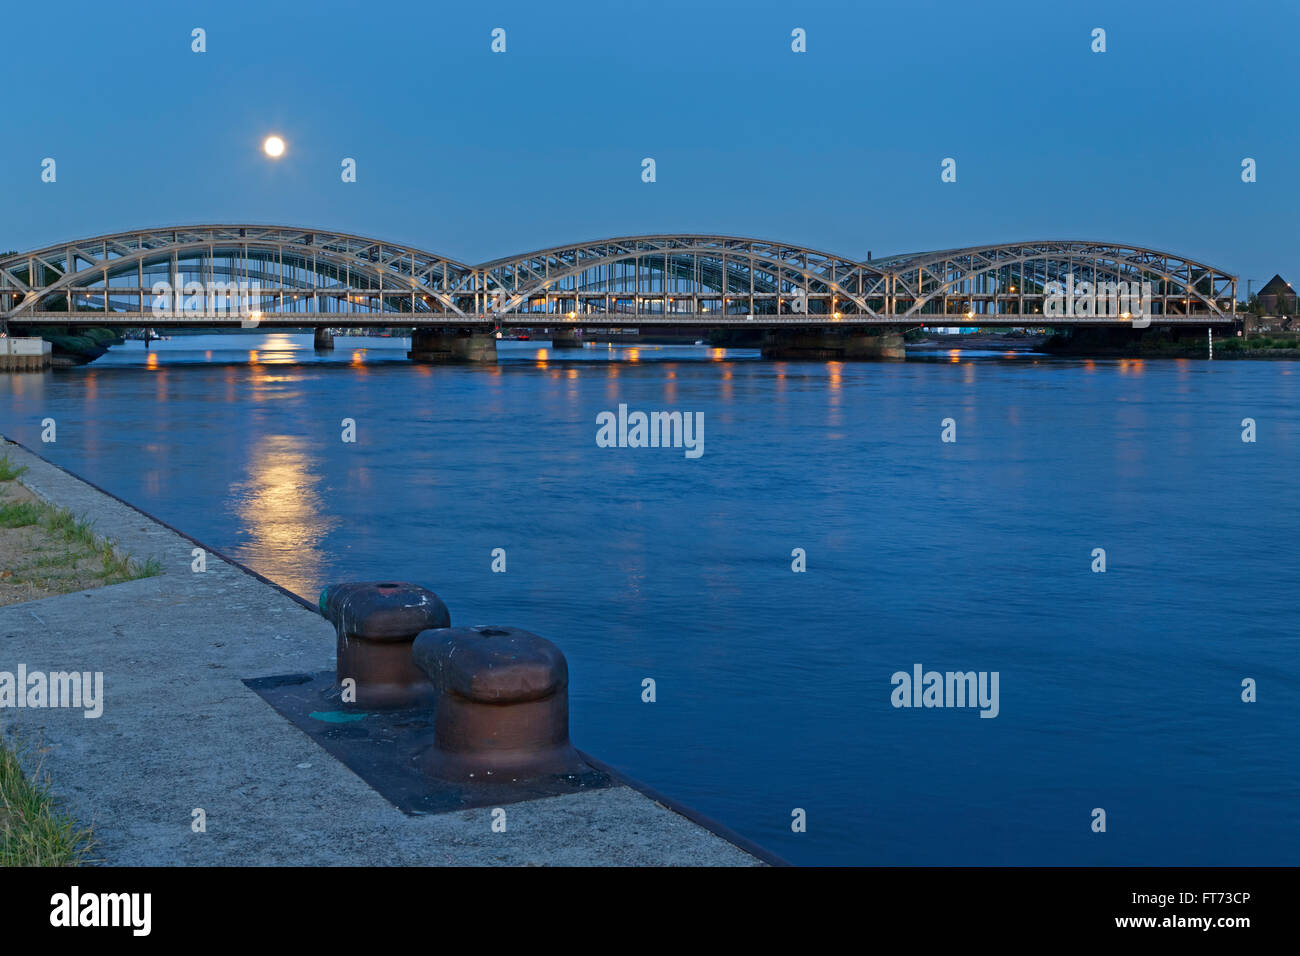 Freihafenelbbrücke Brücke über die Norderelbe, Hamburger Hafen, Elbe, Hamburg, Deutschland, Europa Stockfoto